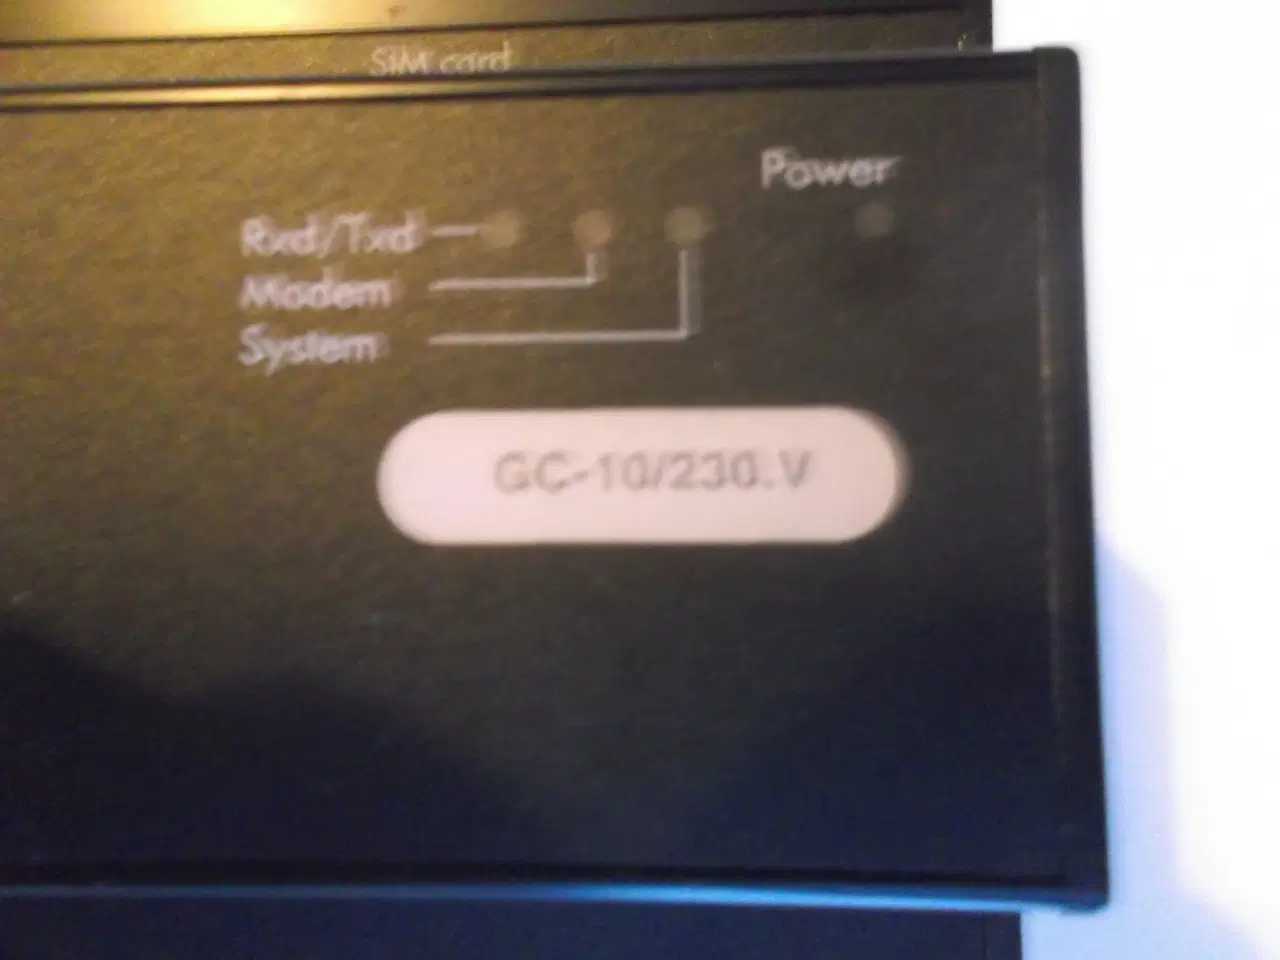 Billede 2 - Brodersen Controls RTU med GSM Modem GC-10/230.V